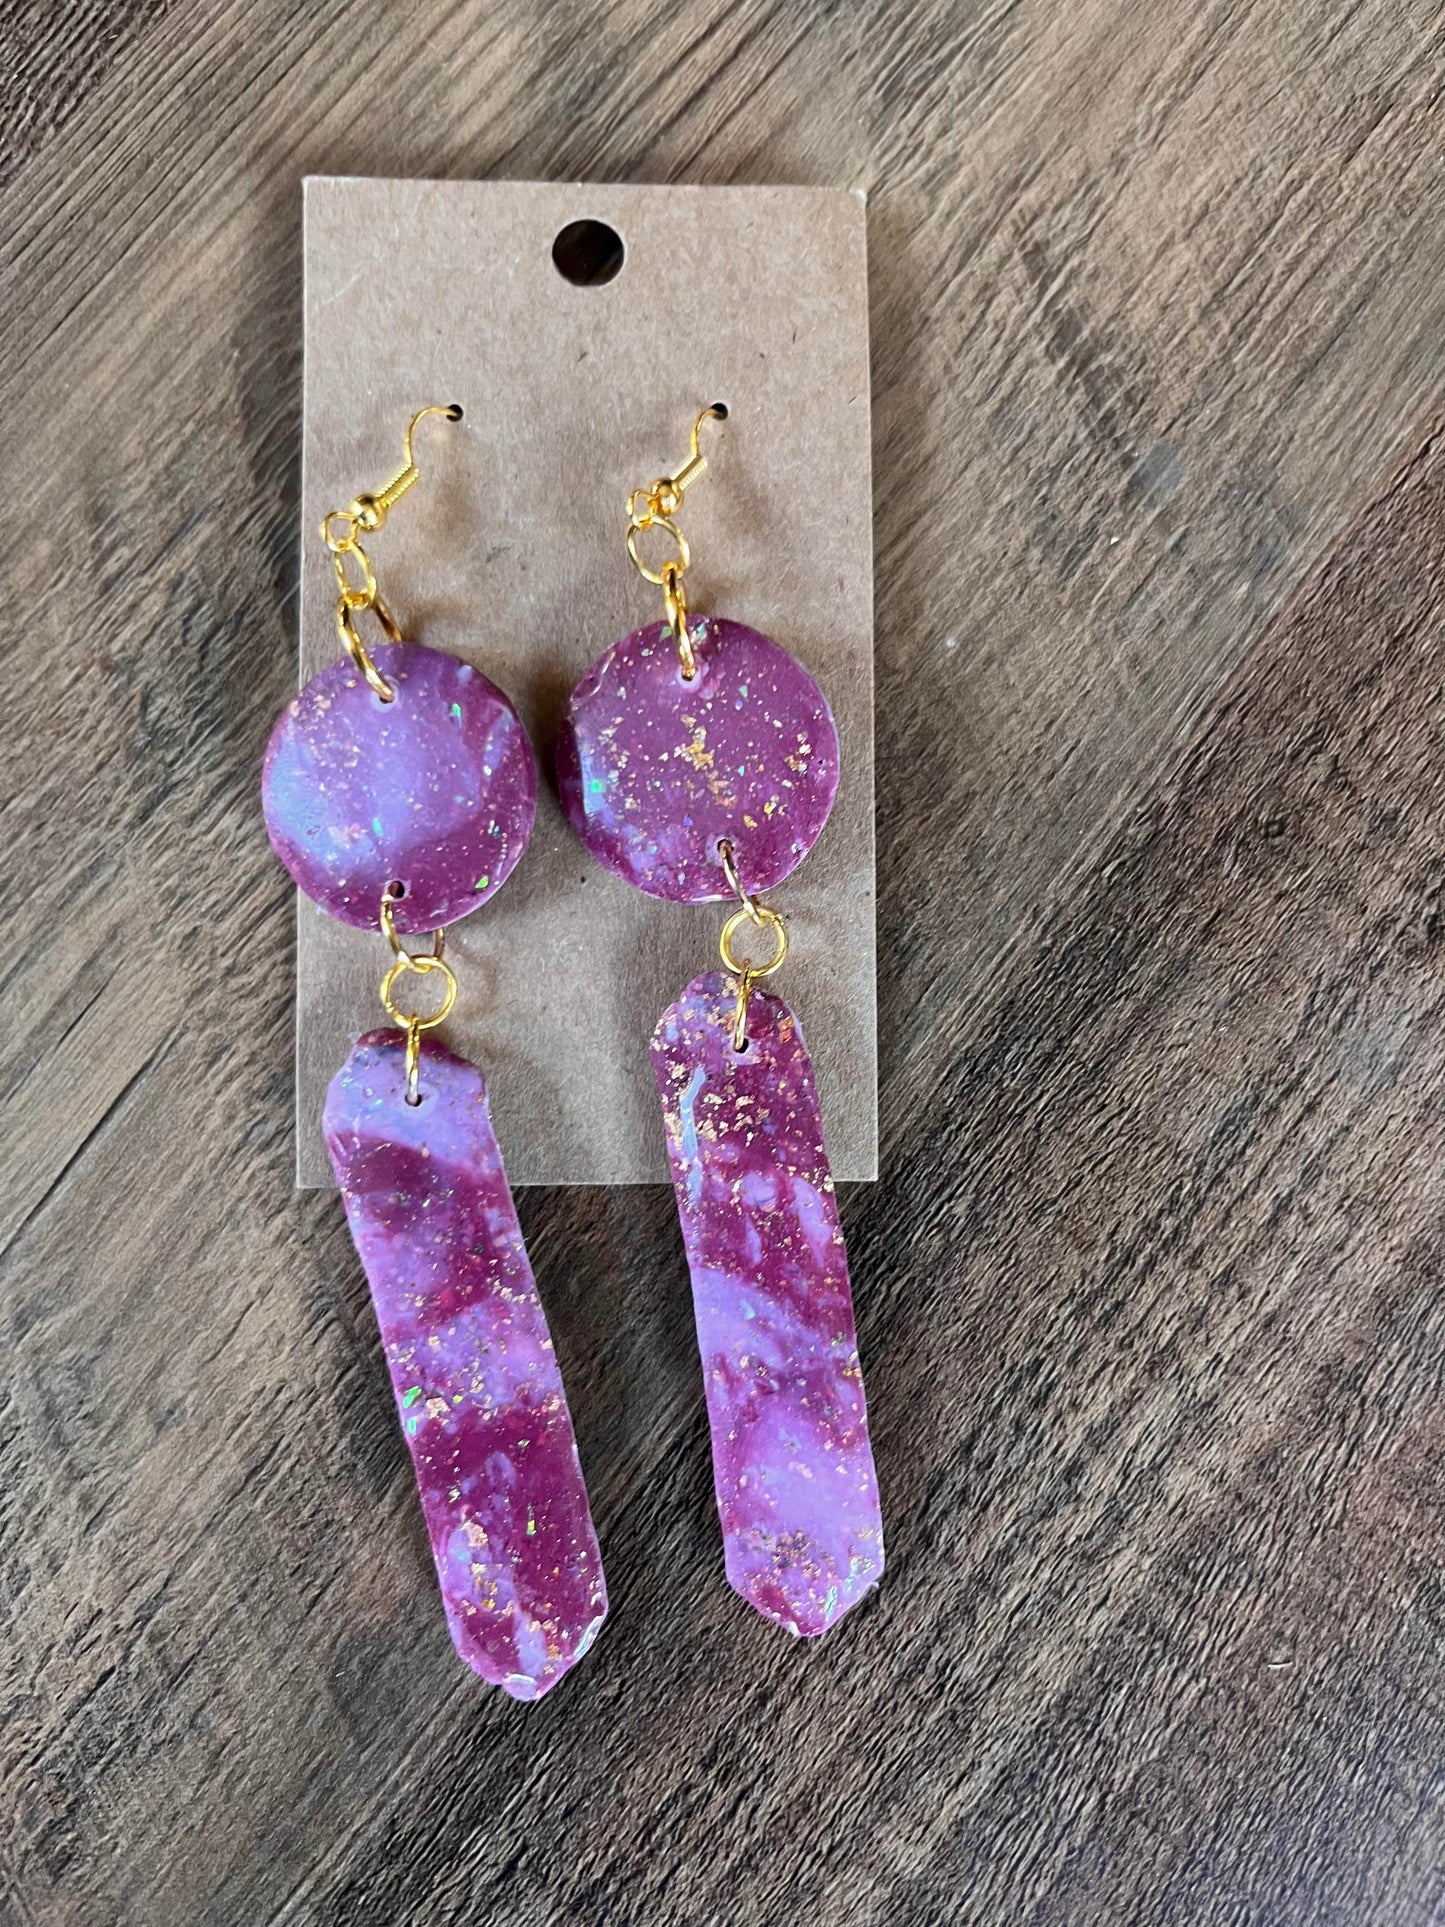 Clay Earrings in "Shimmery Rose/Burgundy" designs